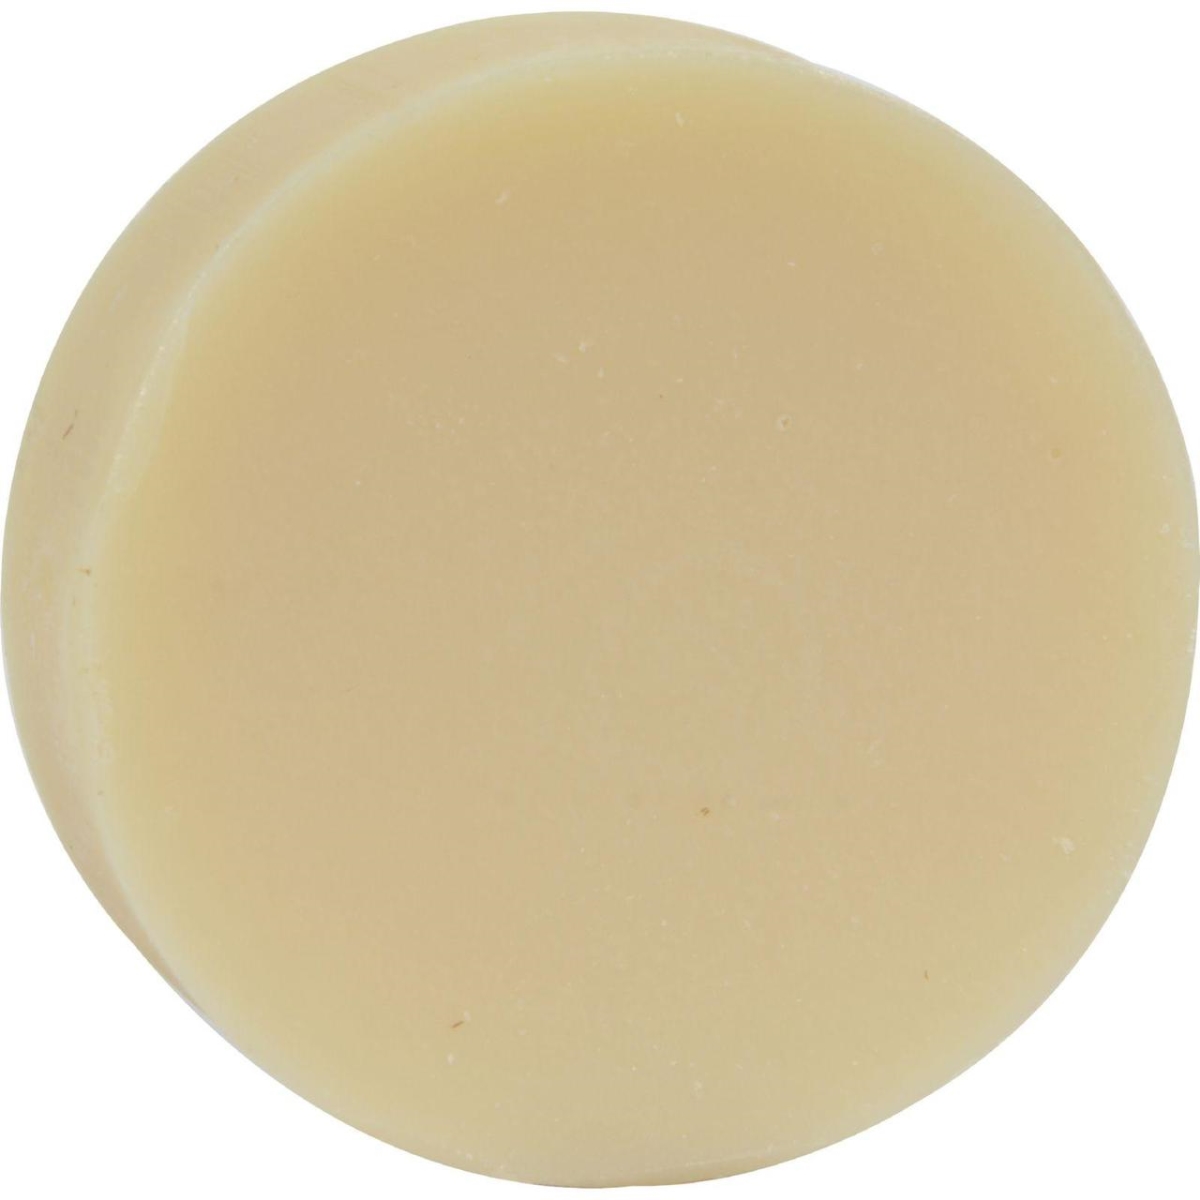 Soapworks Hg0523266 3.5 Oz Natural Glycerine Soap No Color Or Fragrance - Case Of 12